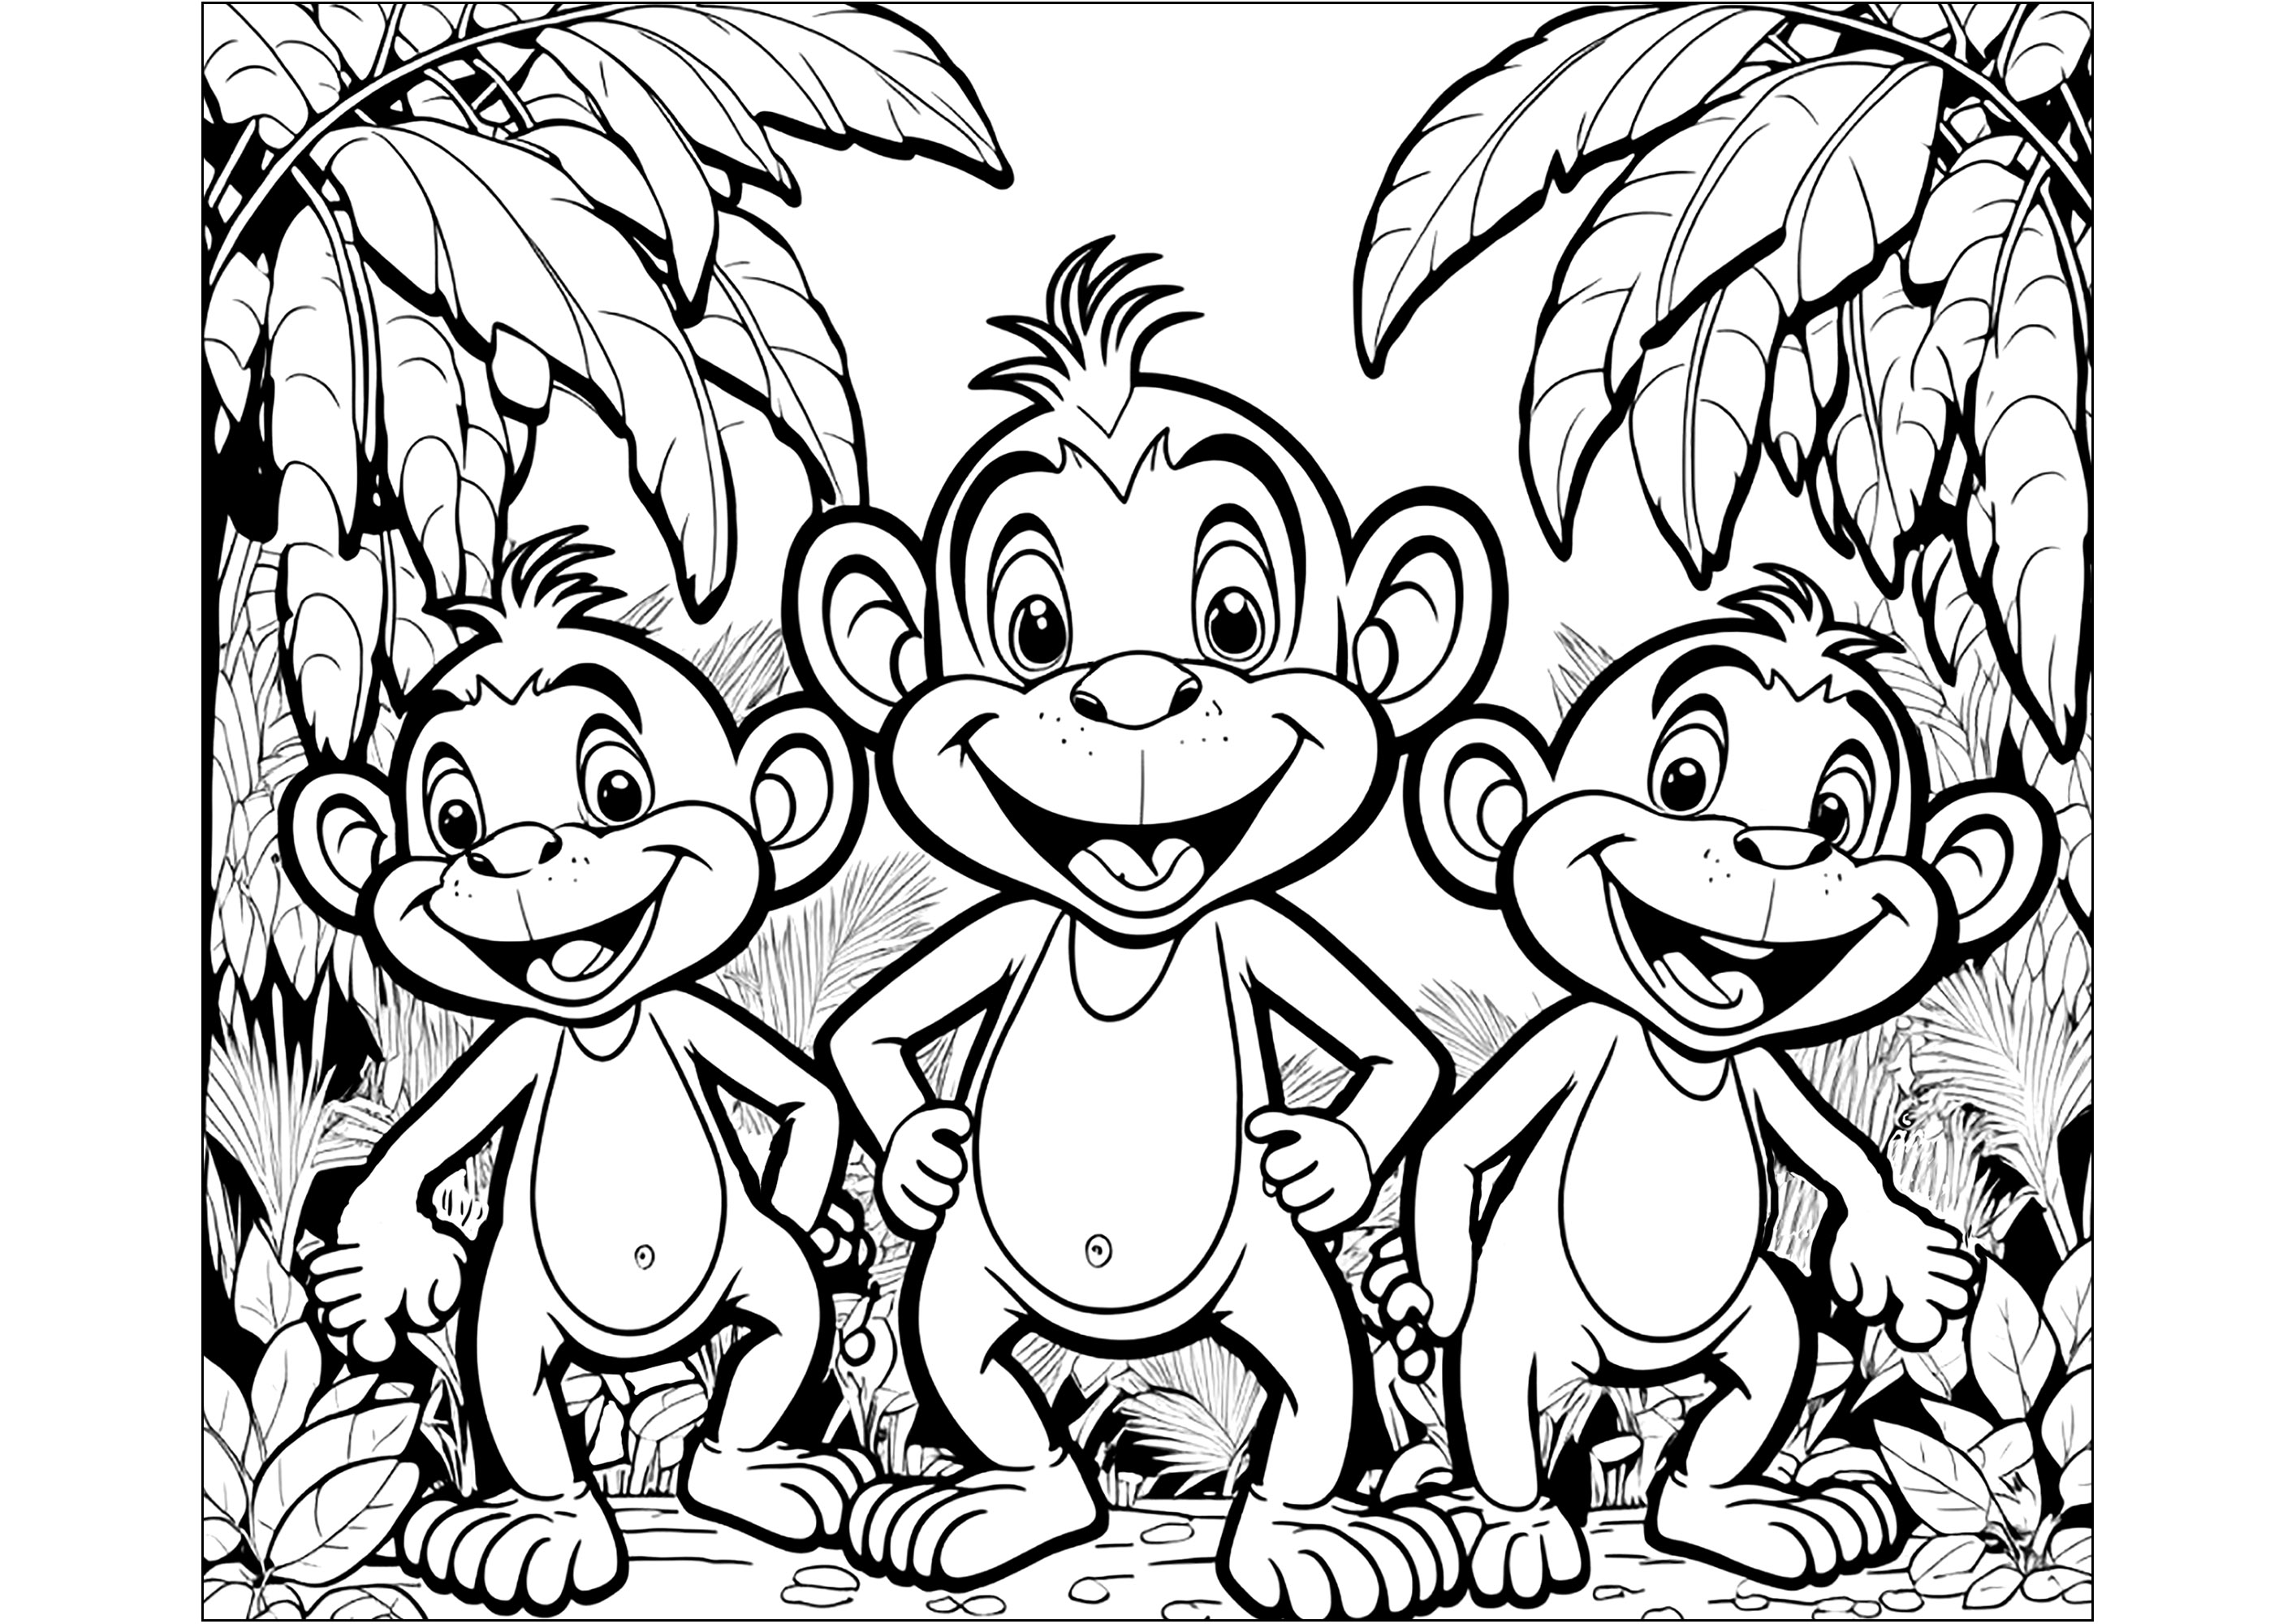 Coloración de tres jóvenes Monos en la selva. Esta página para colorear es perfecta para los niños amantes de los animales y la naturaleza. Muestra a tres jóvenes Monos divirtiéndose en la selva. Esta página para colorear es perfecta para desarrollar la imaginación y la creatividad.